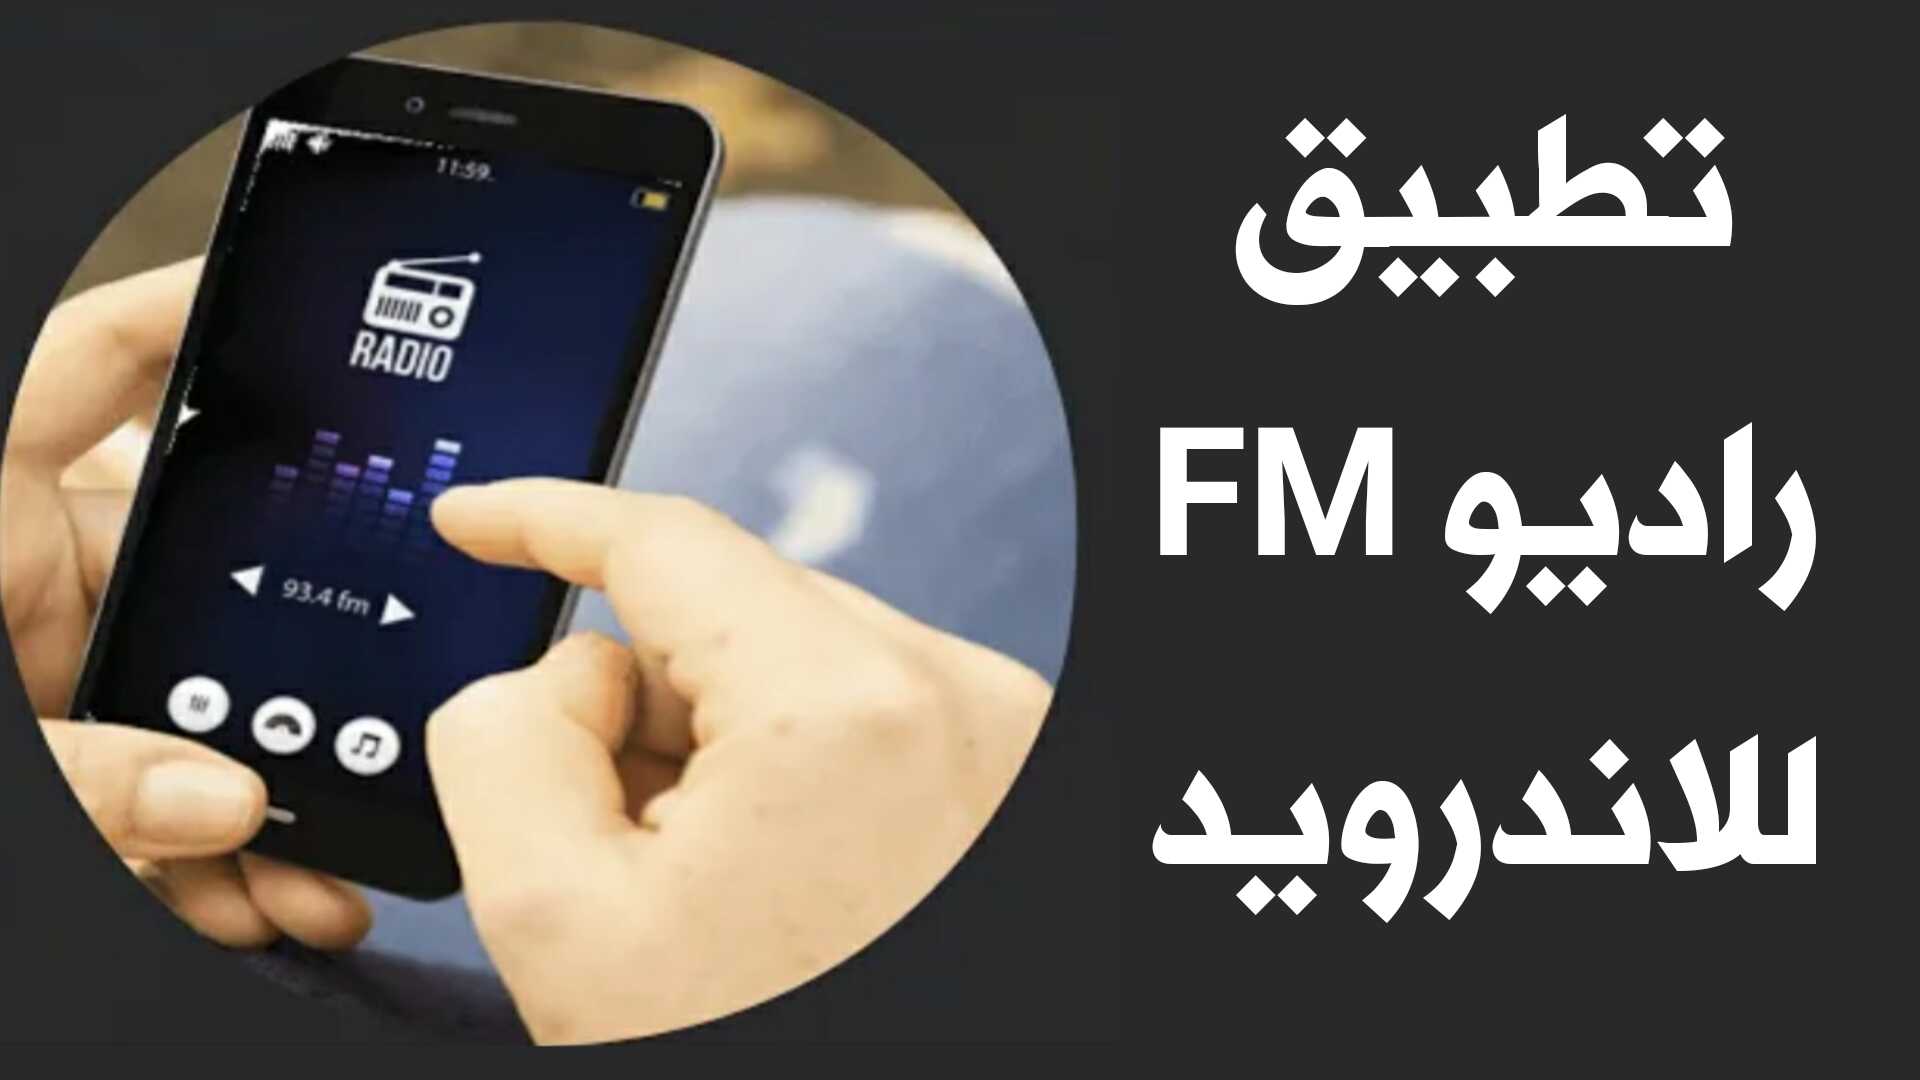 تطبيق راديو FM للاندرويد محطات أذاعية دولية ومحلية